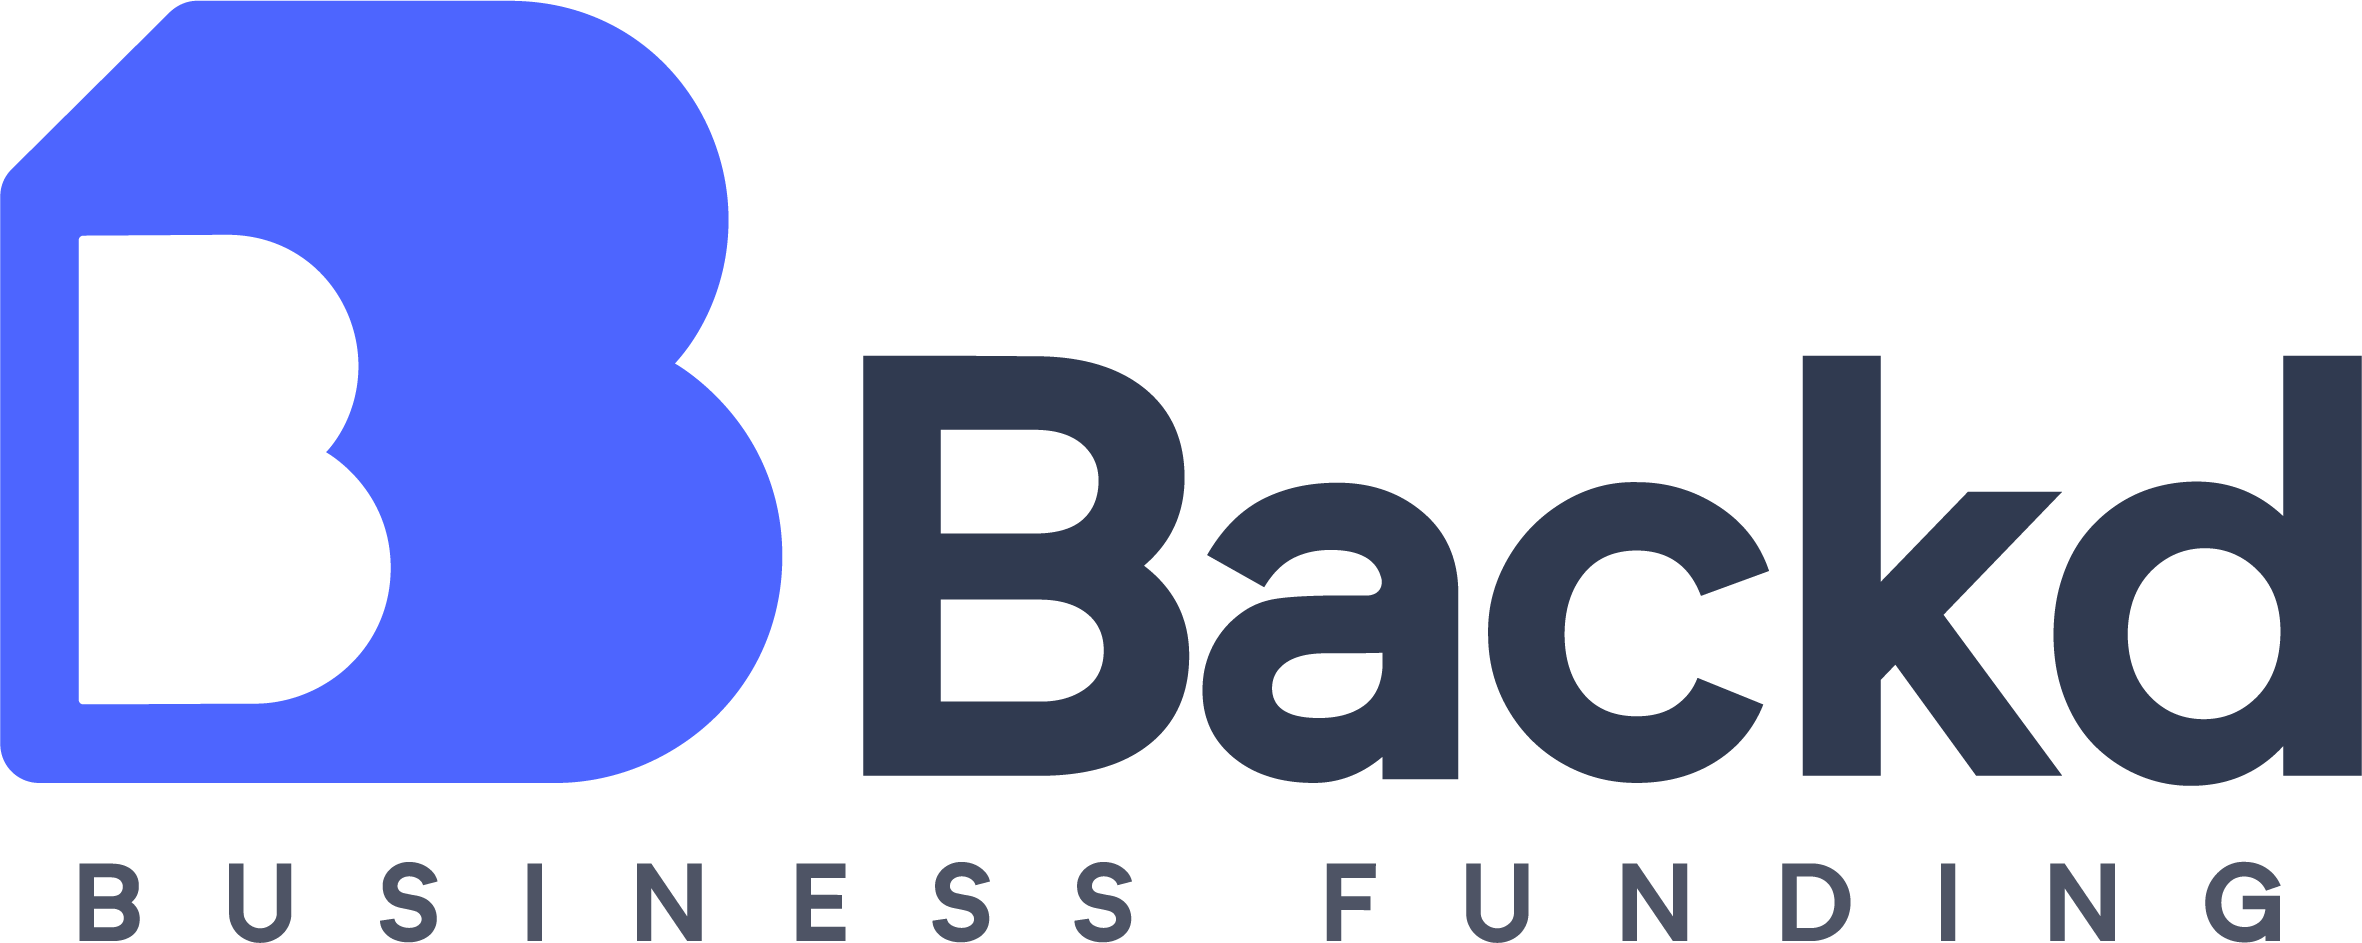 Finacity Facilitates New Lender Finance Program for Backd Business Funding